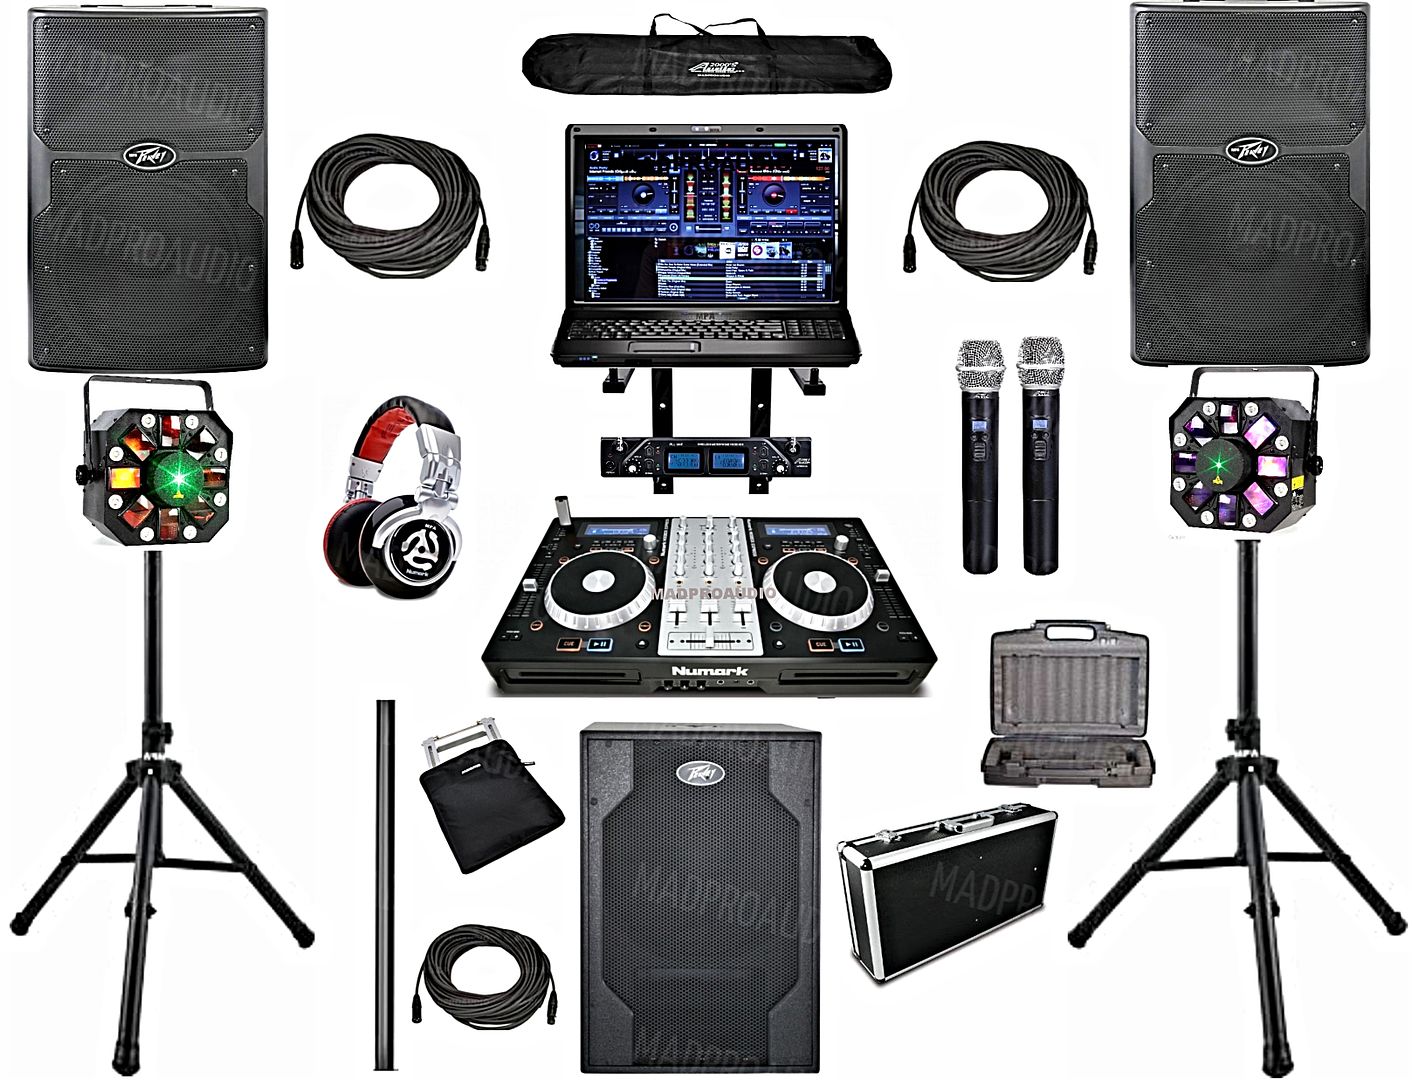 Professional DJ System, club dj system, wedding dj system, dj equipment